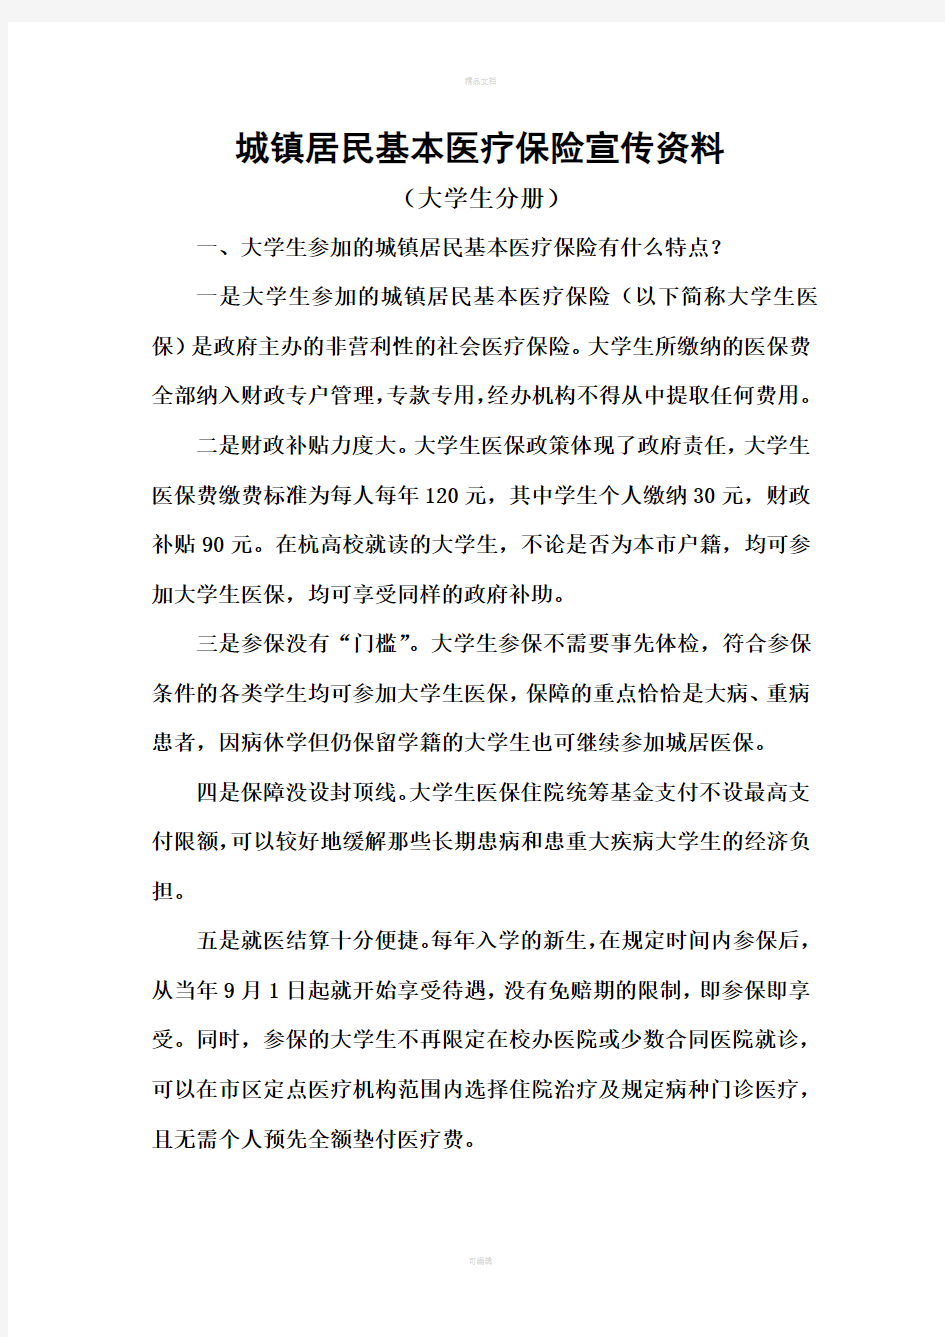 杭州市城镇居民基本医疗保险宣传资料(大学生分册)